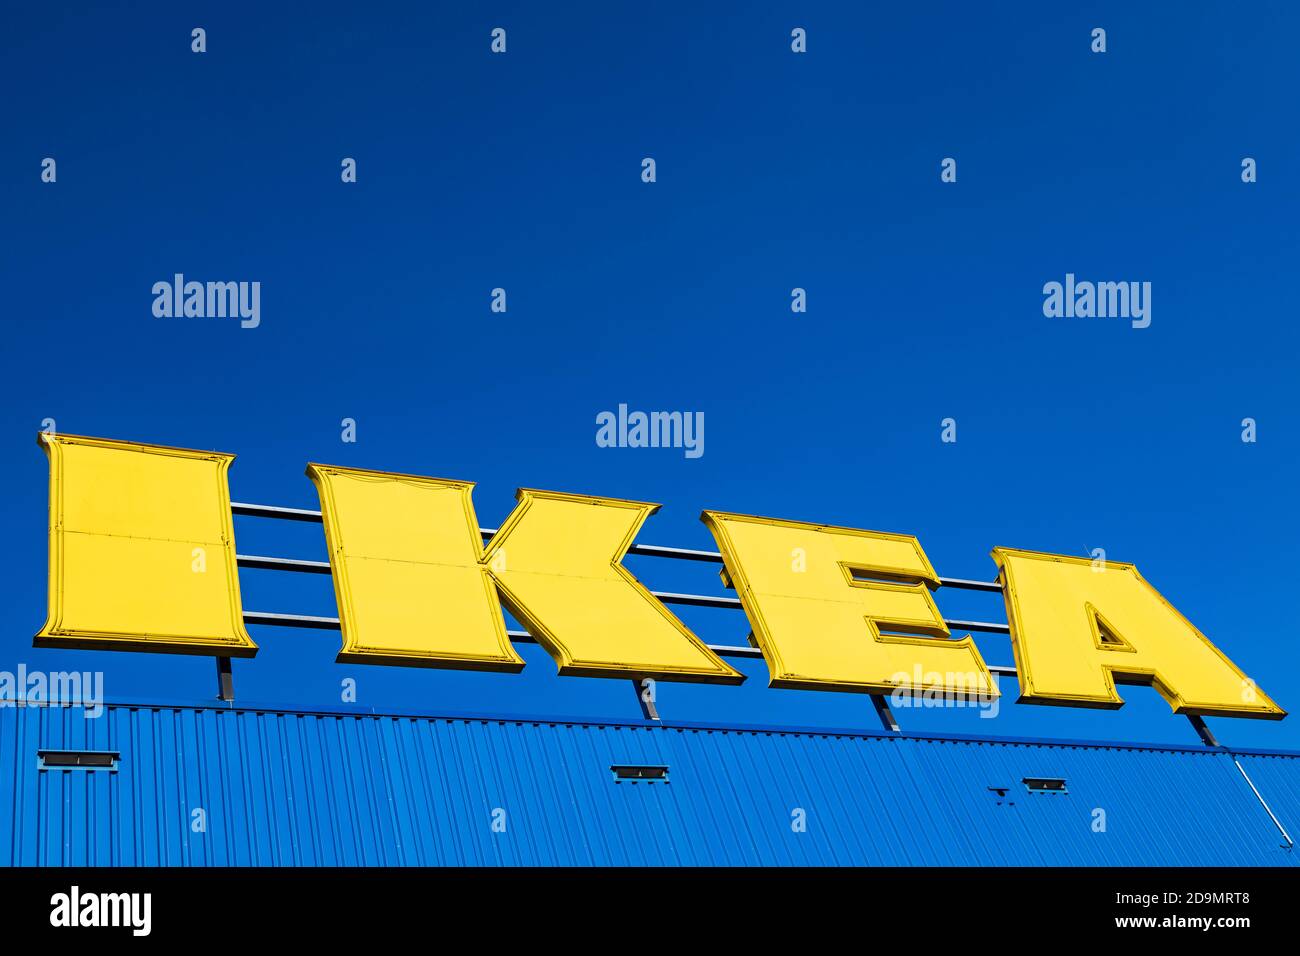 IKEA-Logo auf einem Dach mit Kopierfläche, Ikea-Store in Essen, Nordrhein-Westfalen, Deutschland, Europa Stockfoto